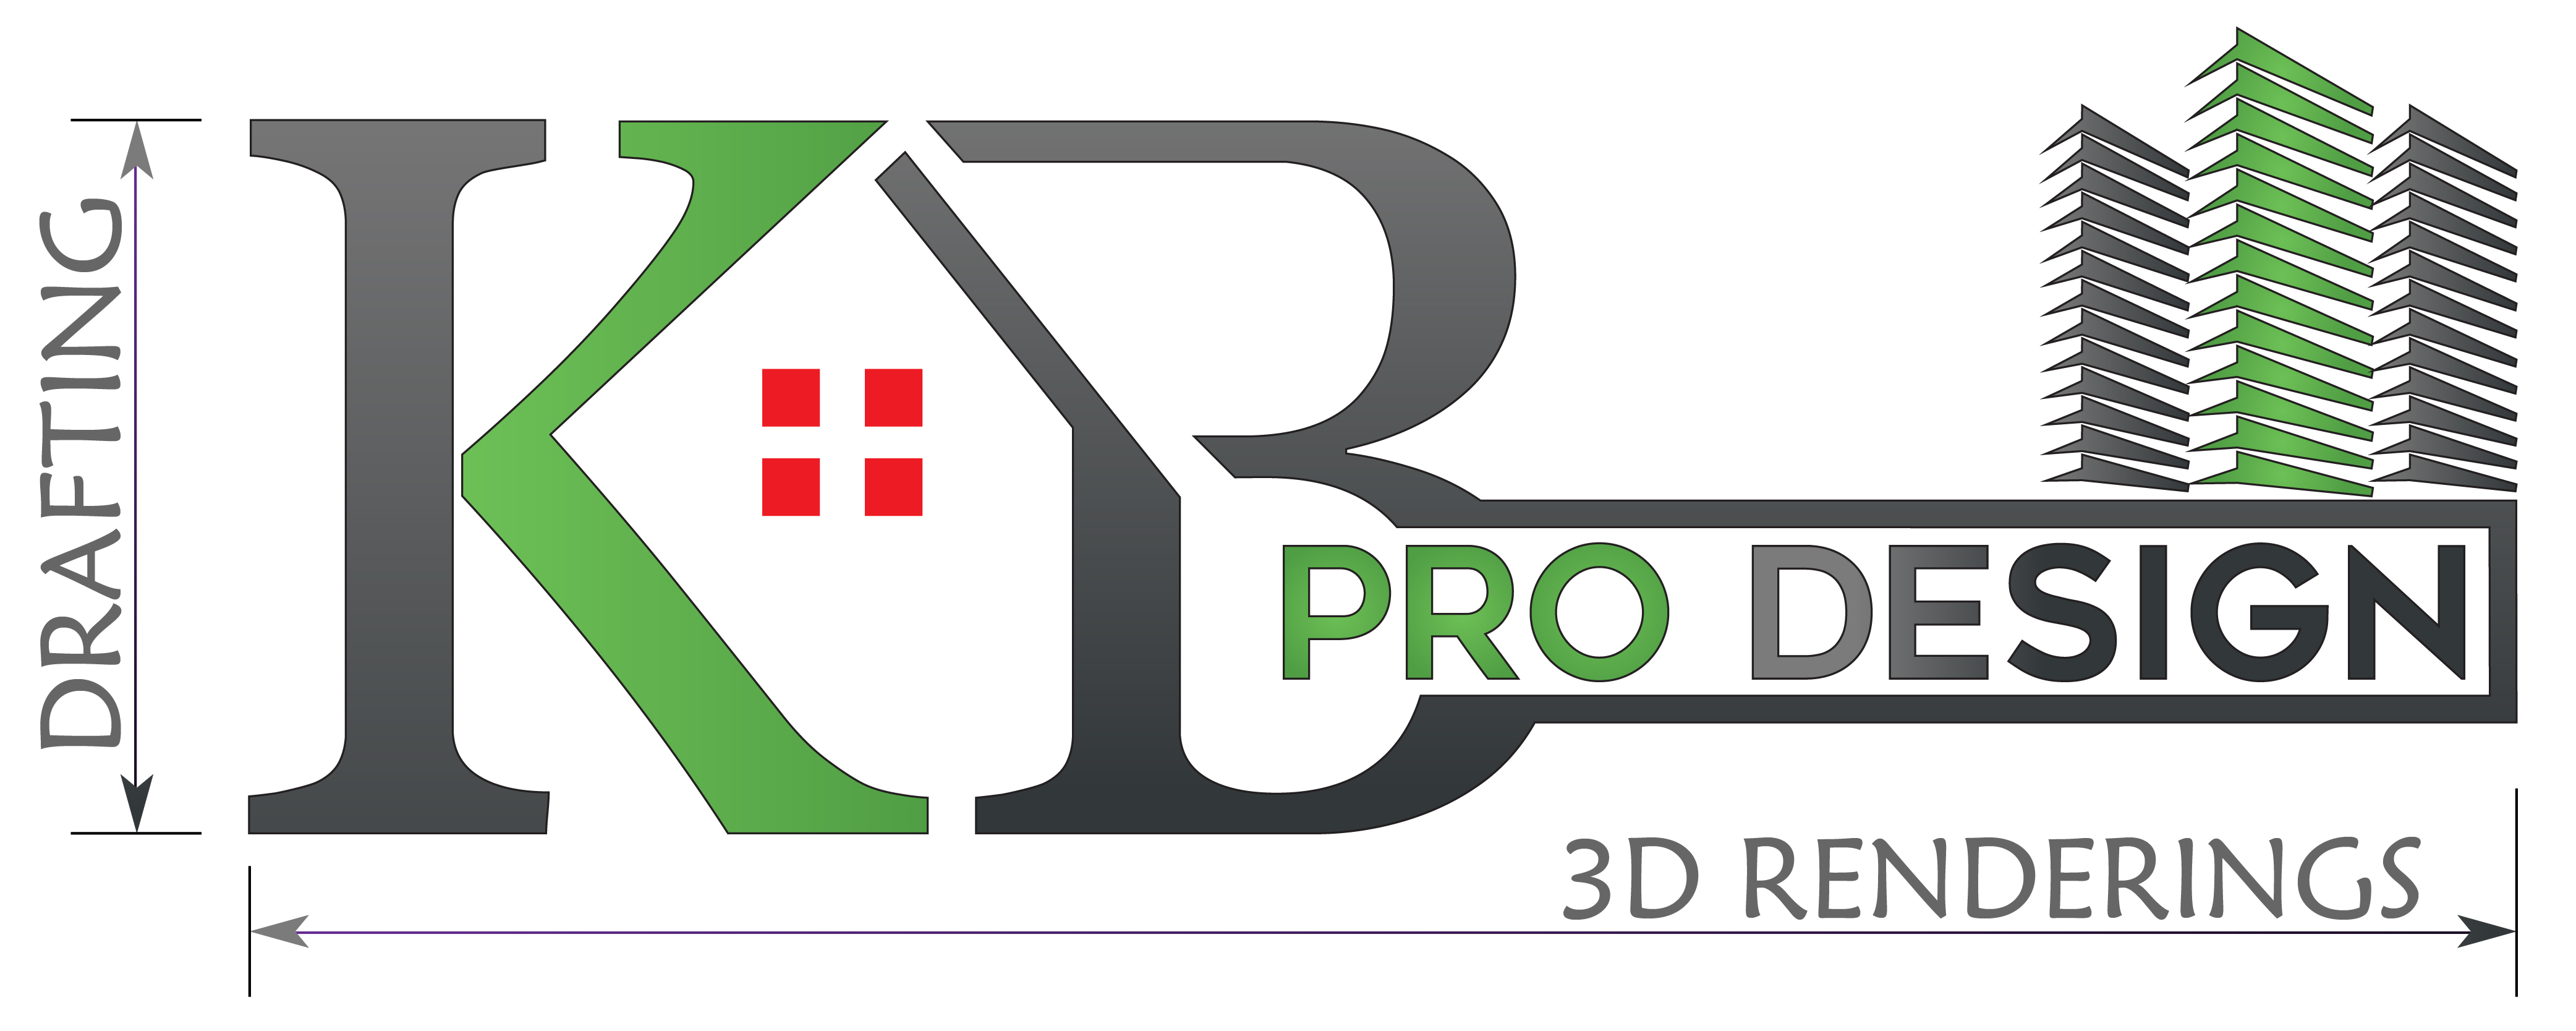 KB Pro Design Logo